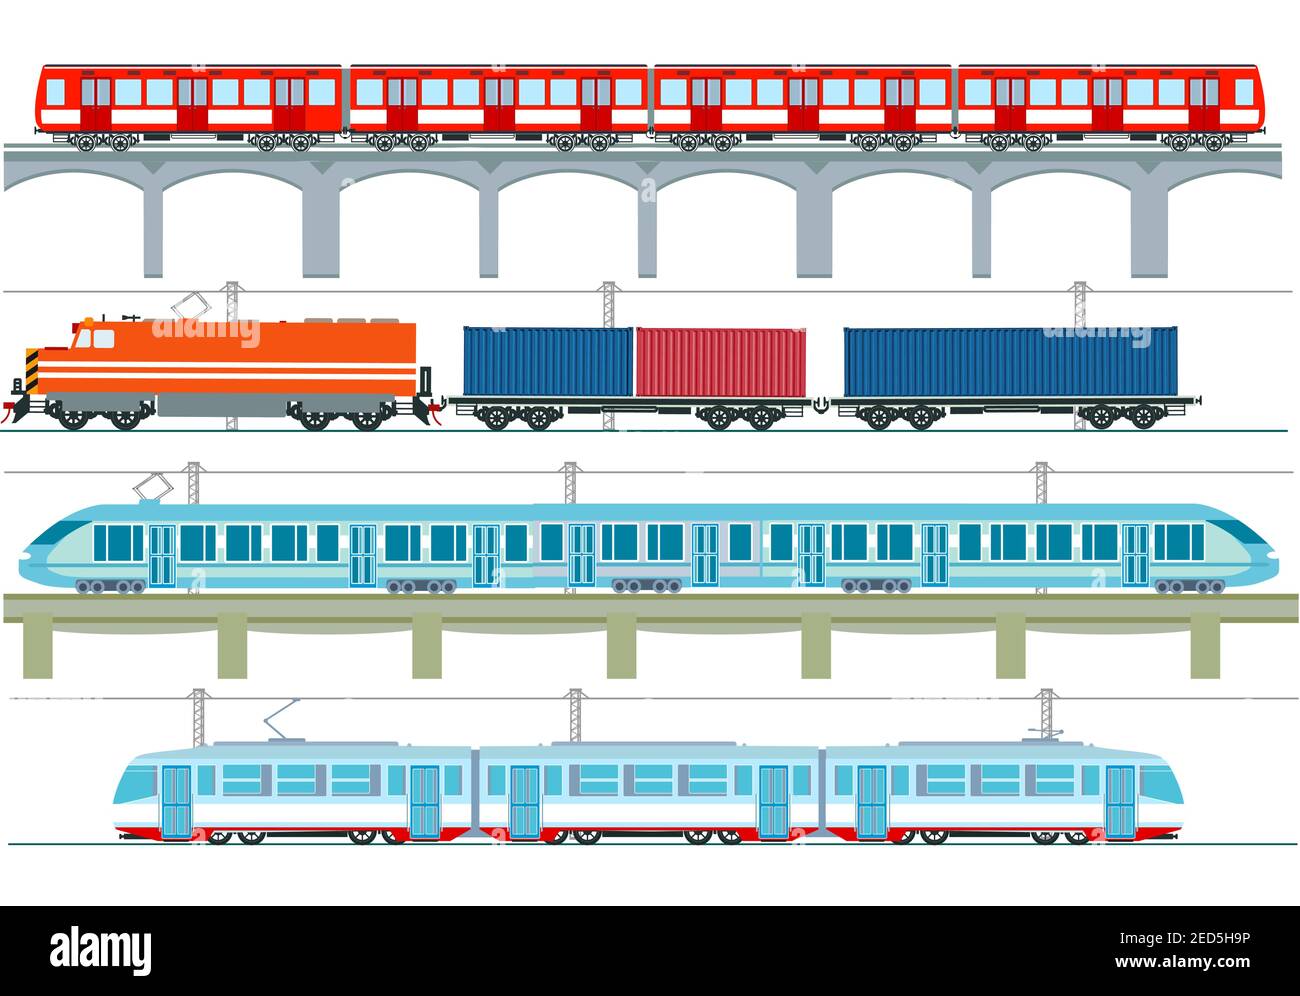 Satz von modernen Personenzügen, U-Bahn-Verkehr, Hochgeschwindigkeitszüge und U-Bahn-Zug, Straßenbahn, Güterzug - Vektor-Illustration Stock Vektor